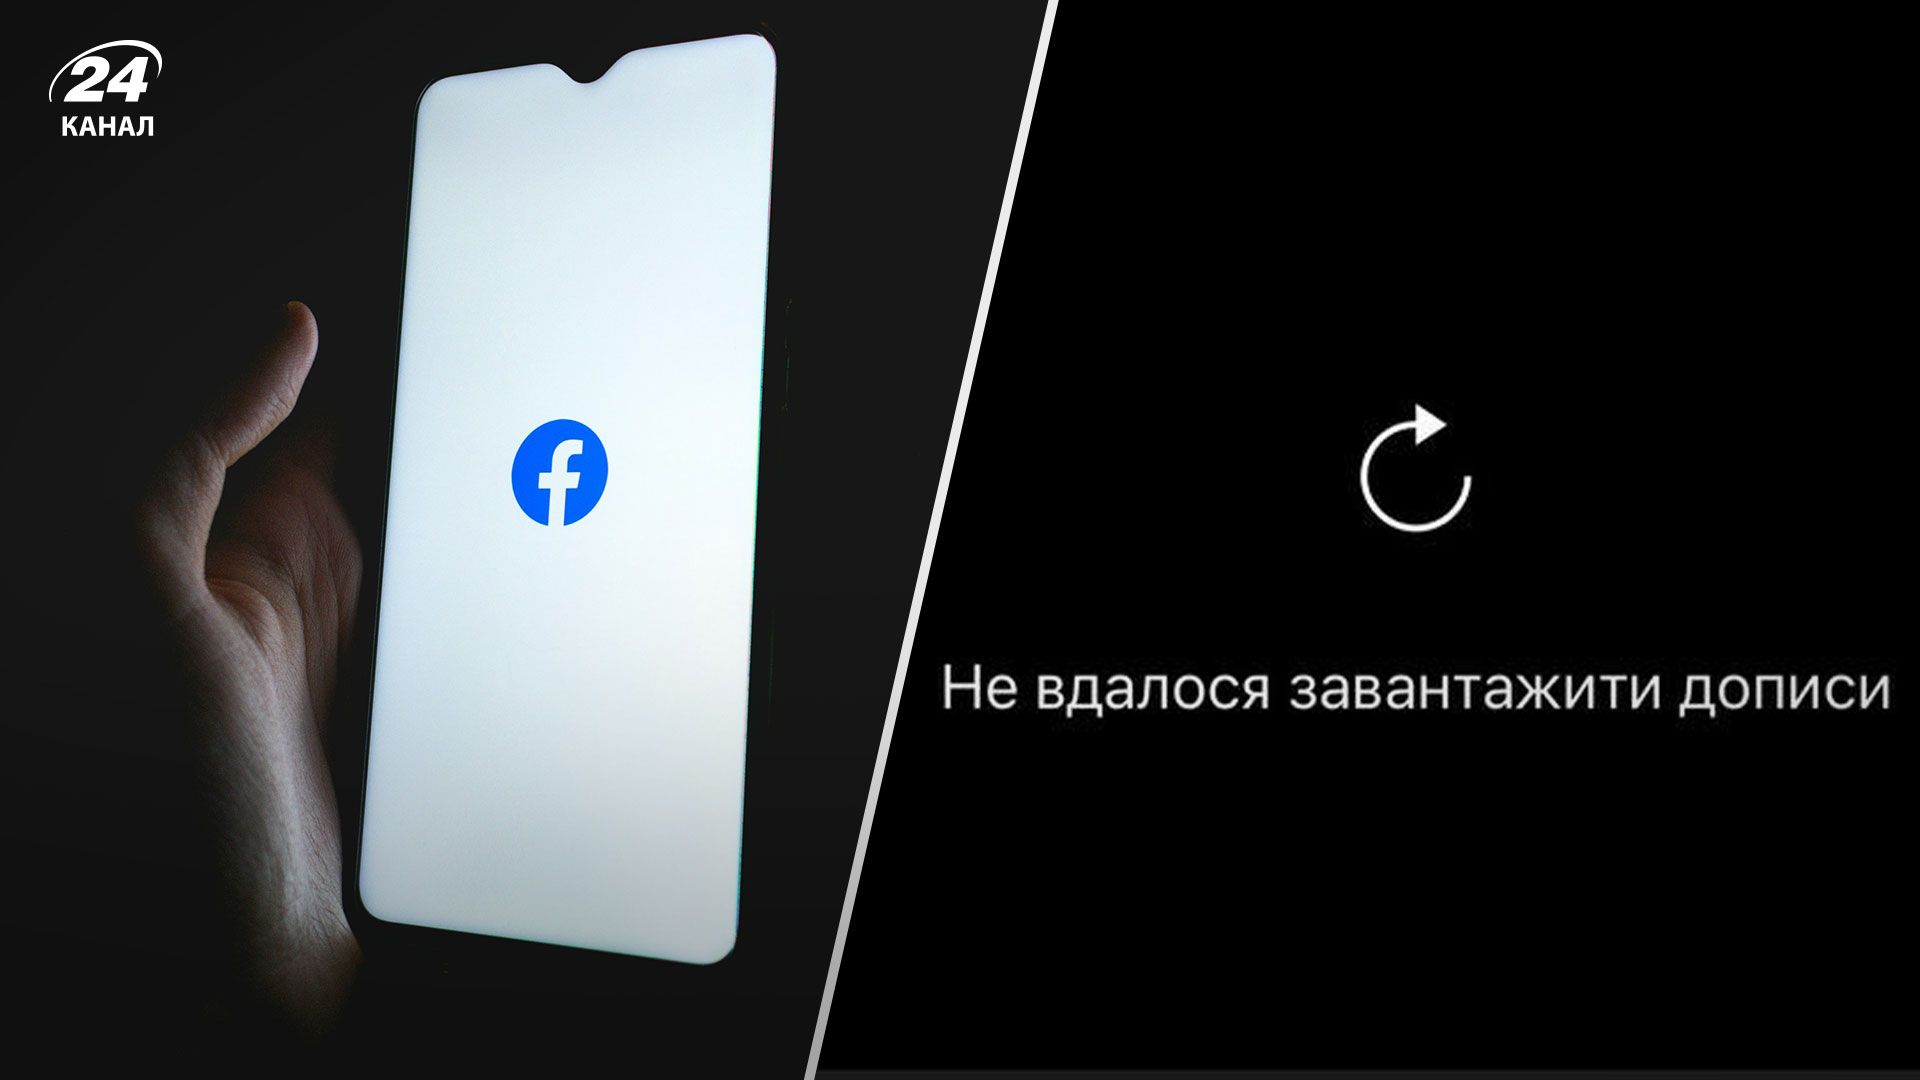 Facebook и Instagram "упали": пользователей выбросило из аккаунтов - 24 Канал